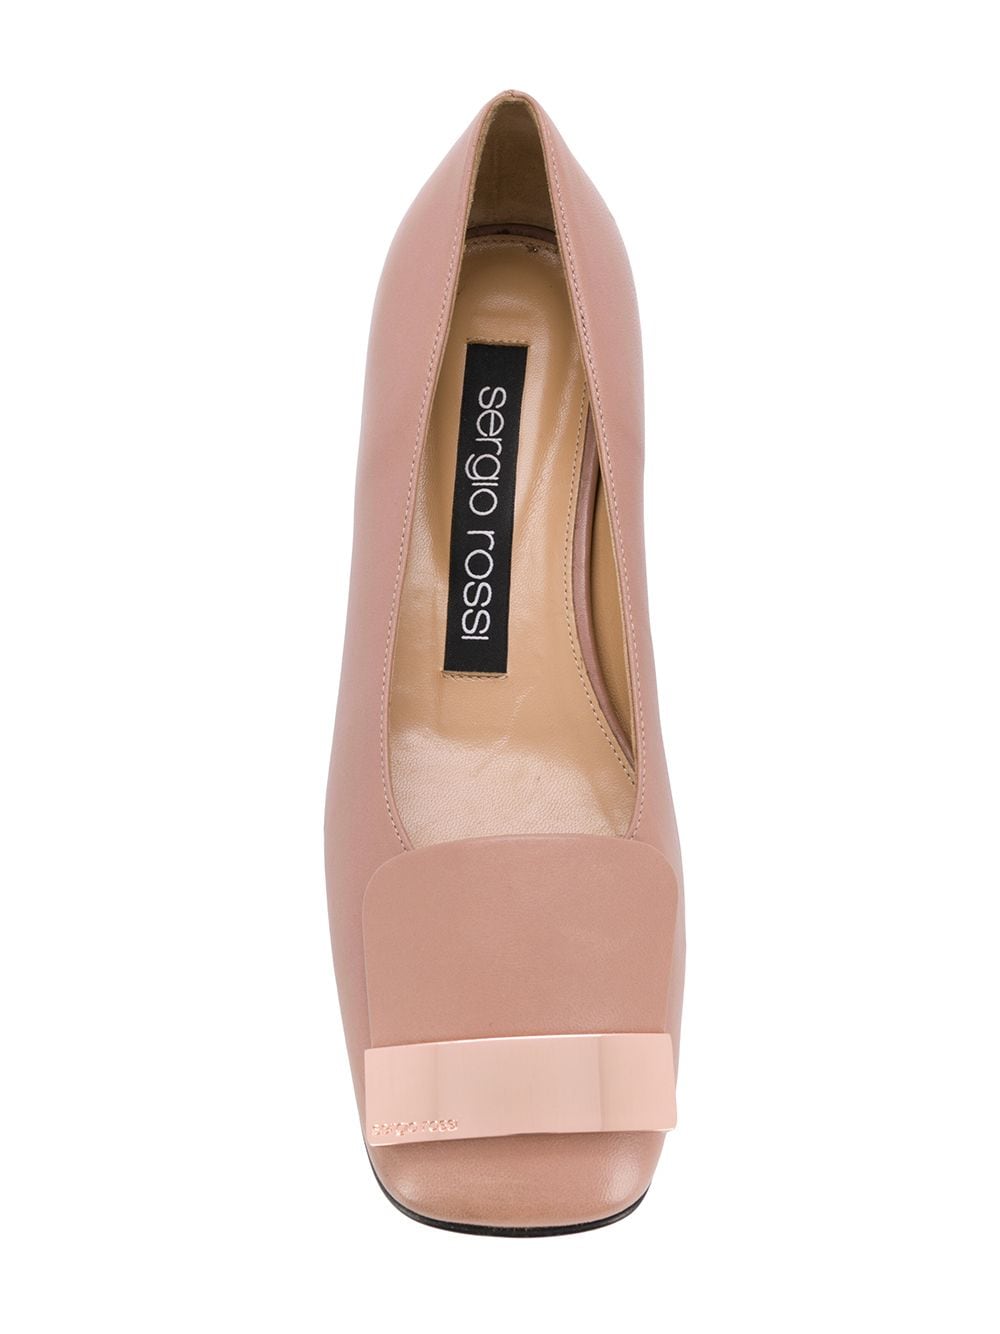 Sergio Rossi SR1 Ballerina Shoes - Farfetch